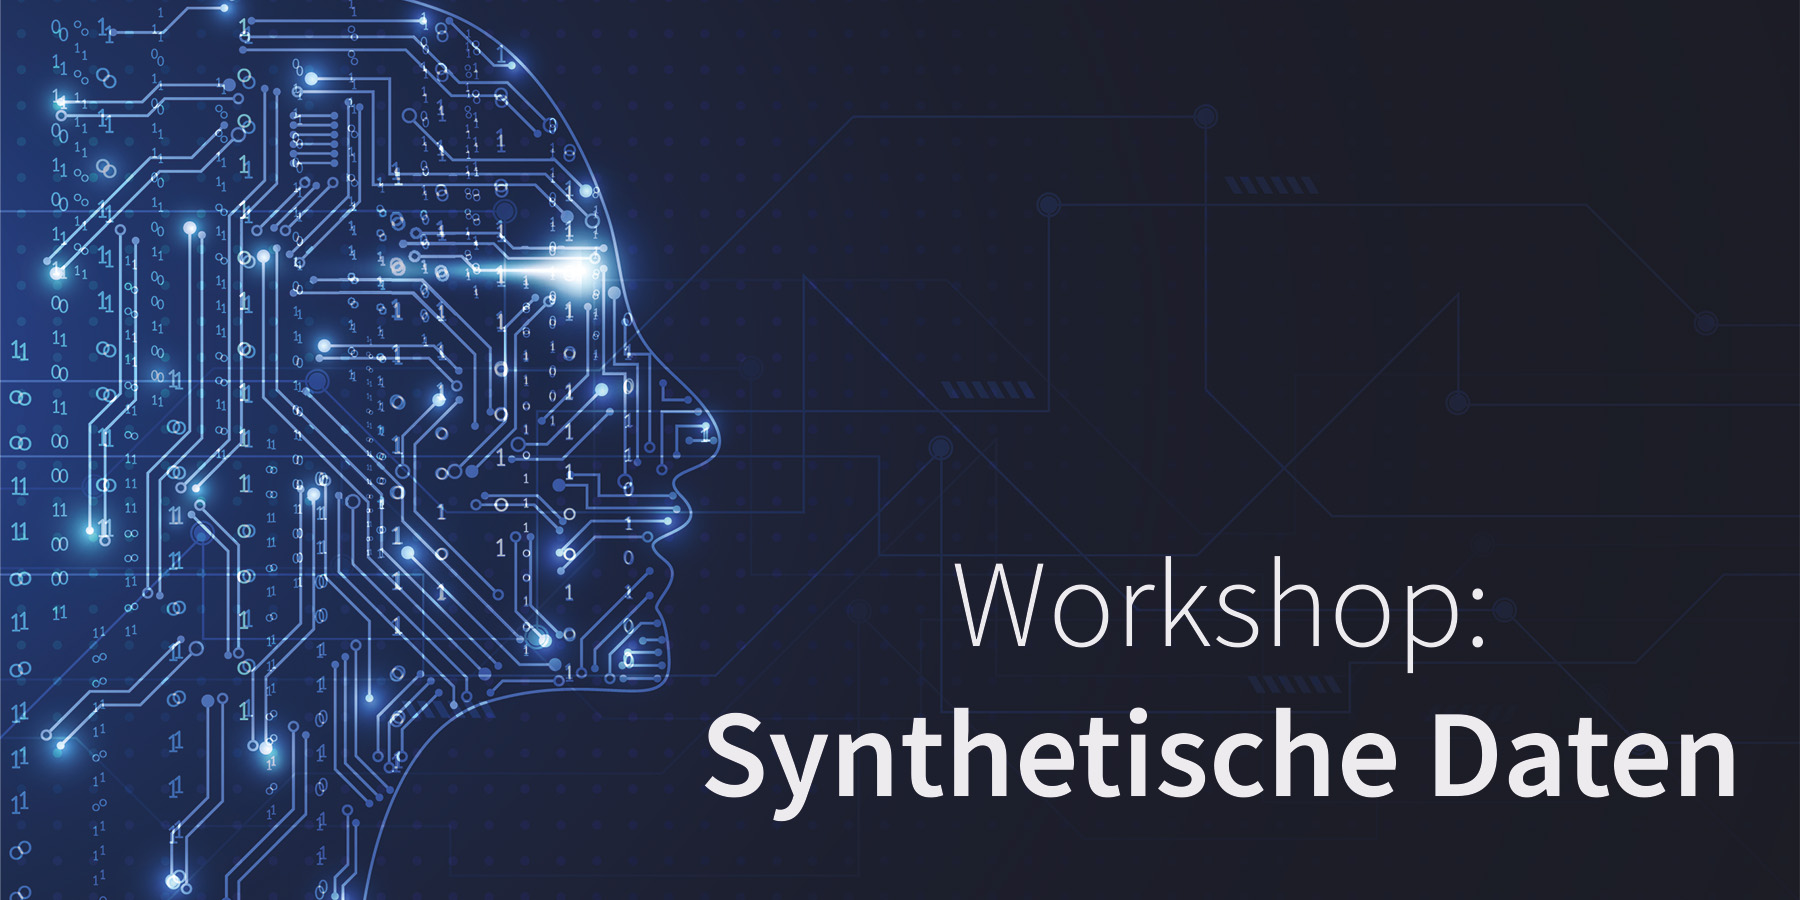 Ein Eventbild, das den Workshop zum Thema Synthetische Daten abbildet.